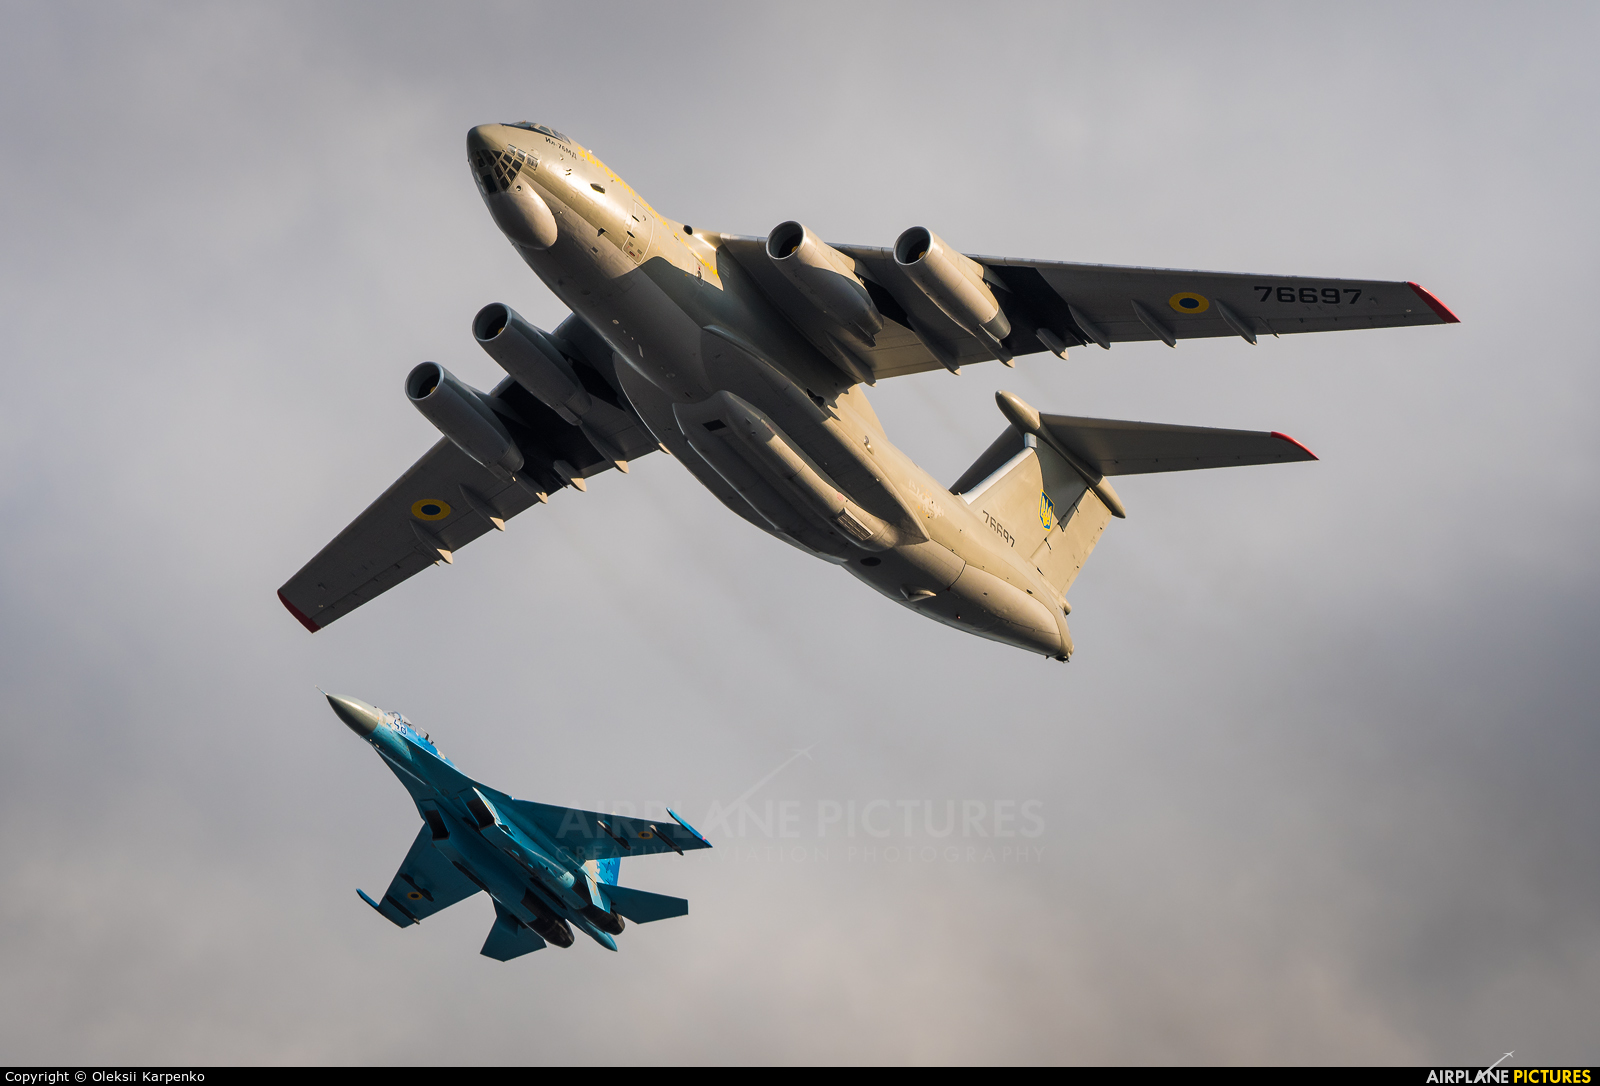 Ukraine - Air Force 76697 aircraft at In Flight - Ukraine